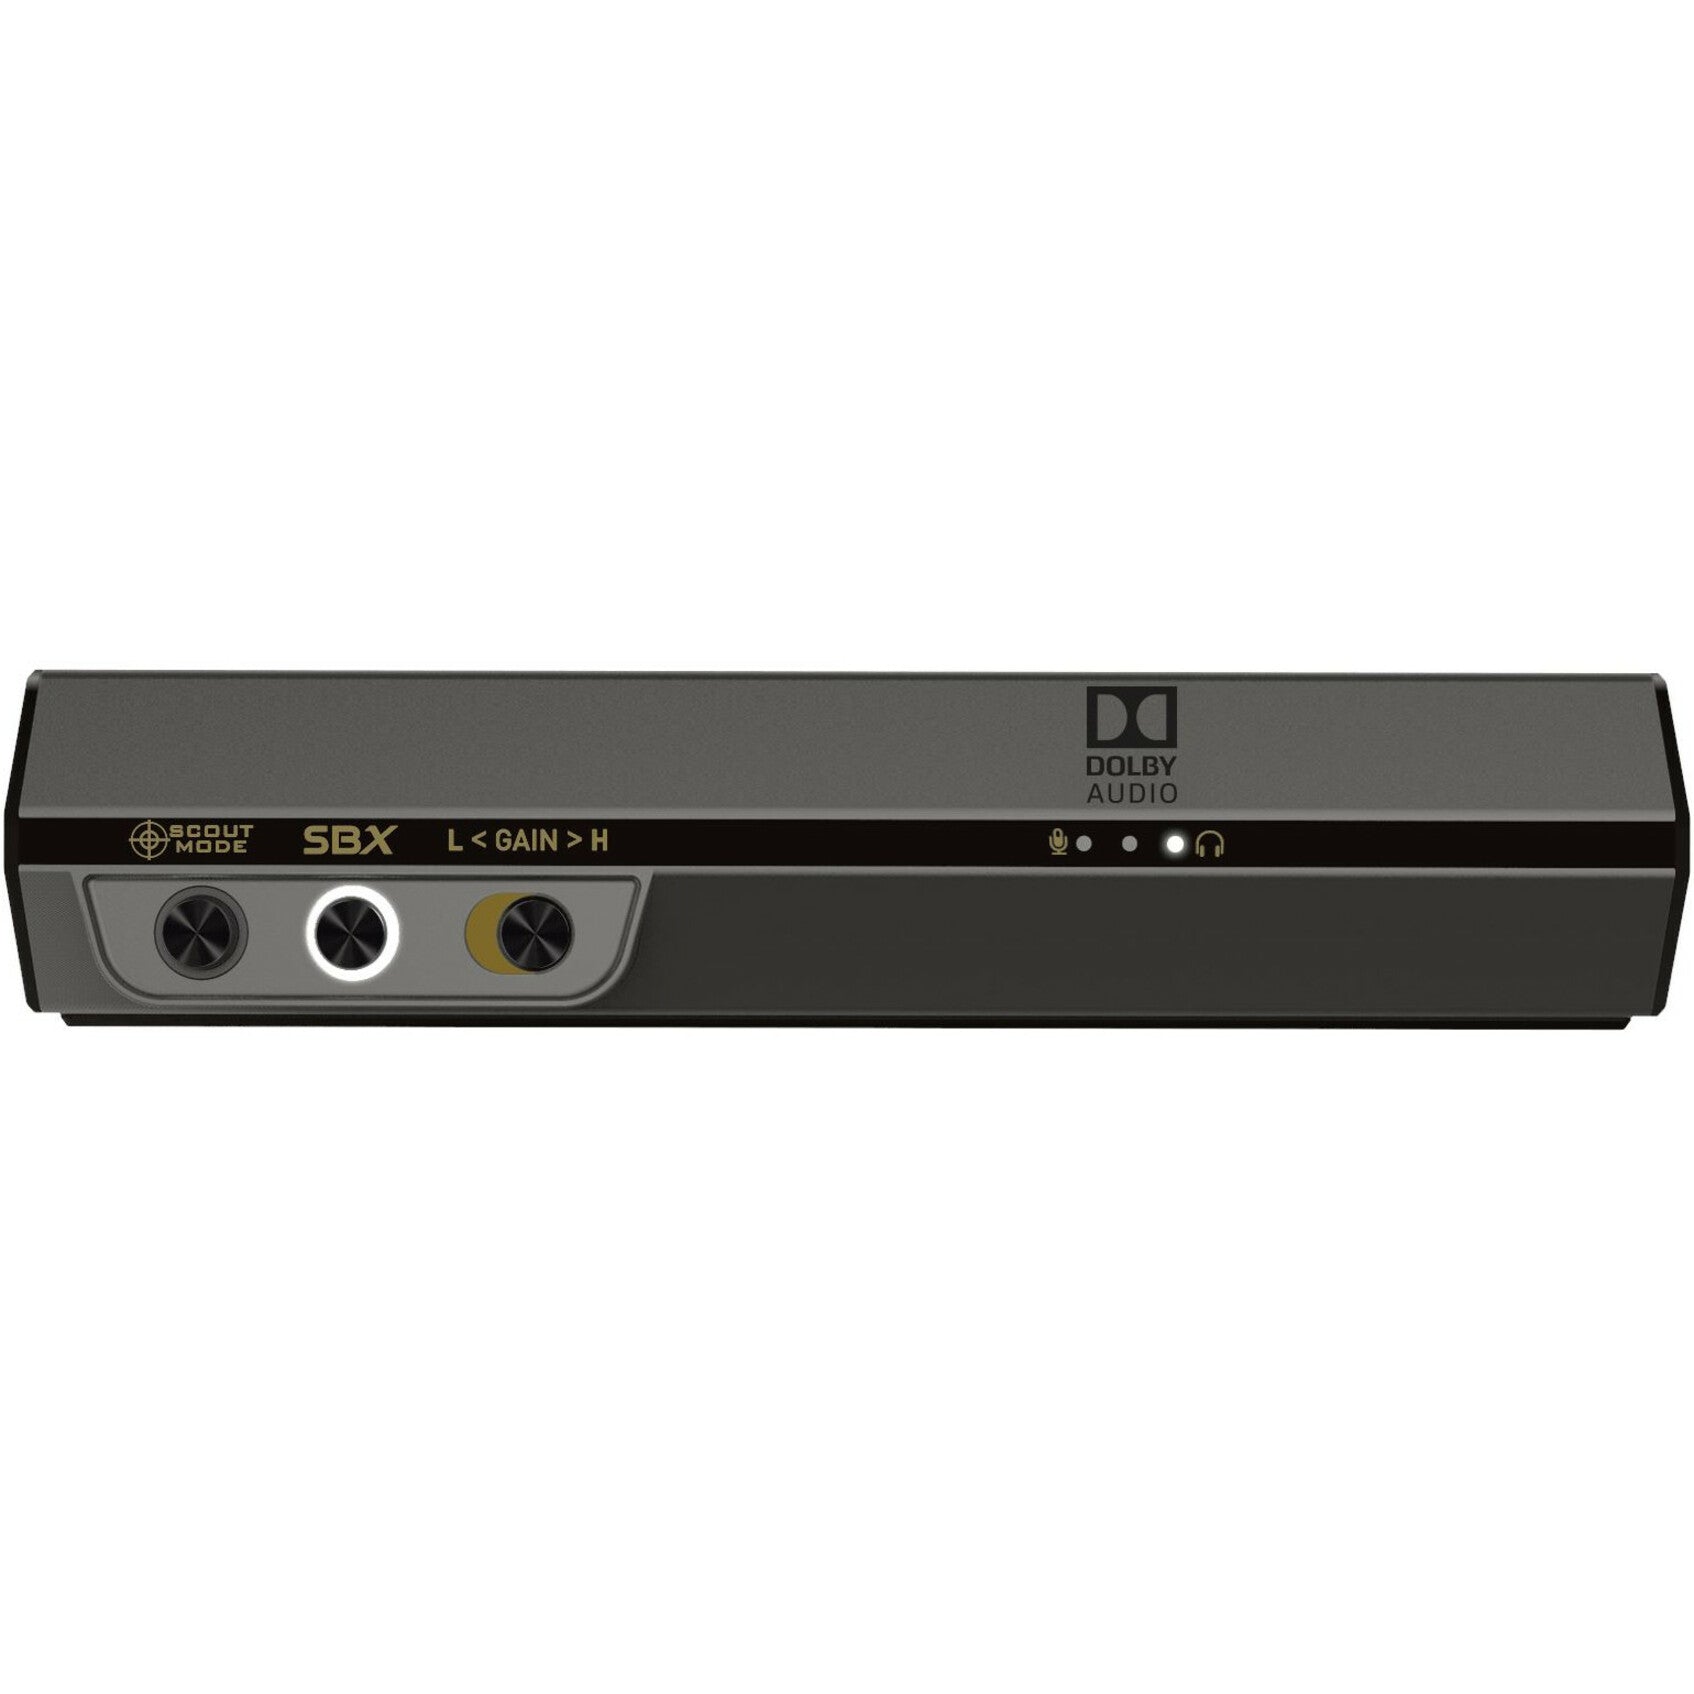 Sound Blaster 70SB177000000 Sound BlasterX G6 External Sound Card, 7.1 Sound Channels, 32-bit DAC Data Width